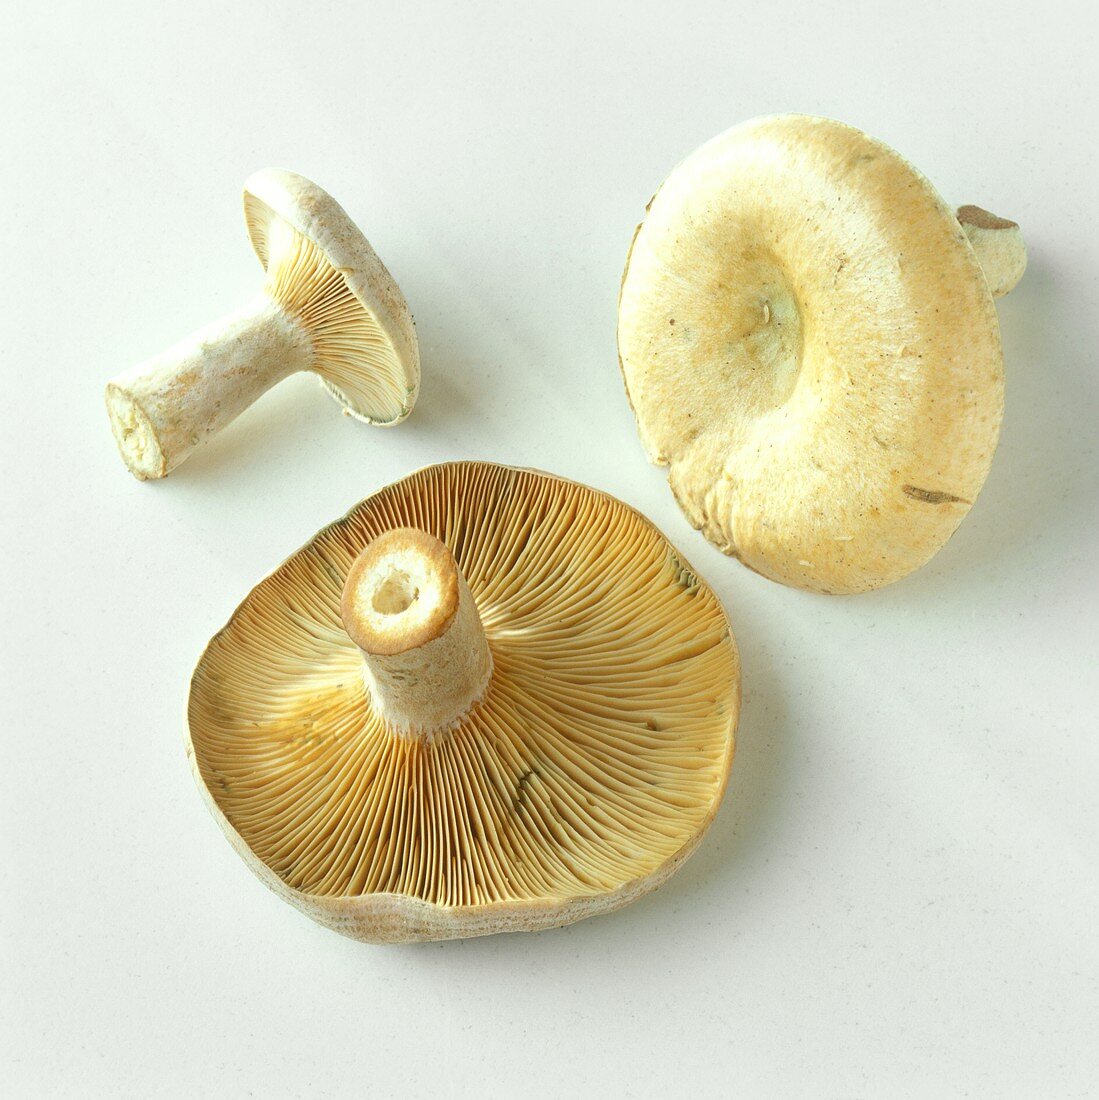 Three milkcaps (Lactarius helvus), seasoning mushroom